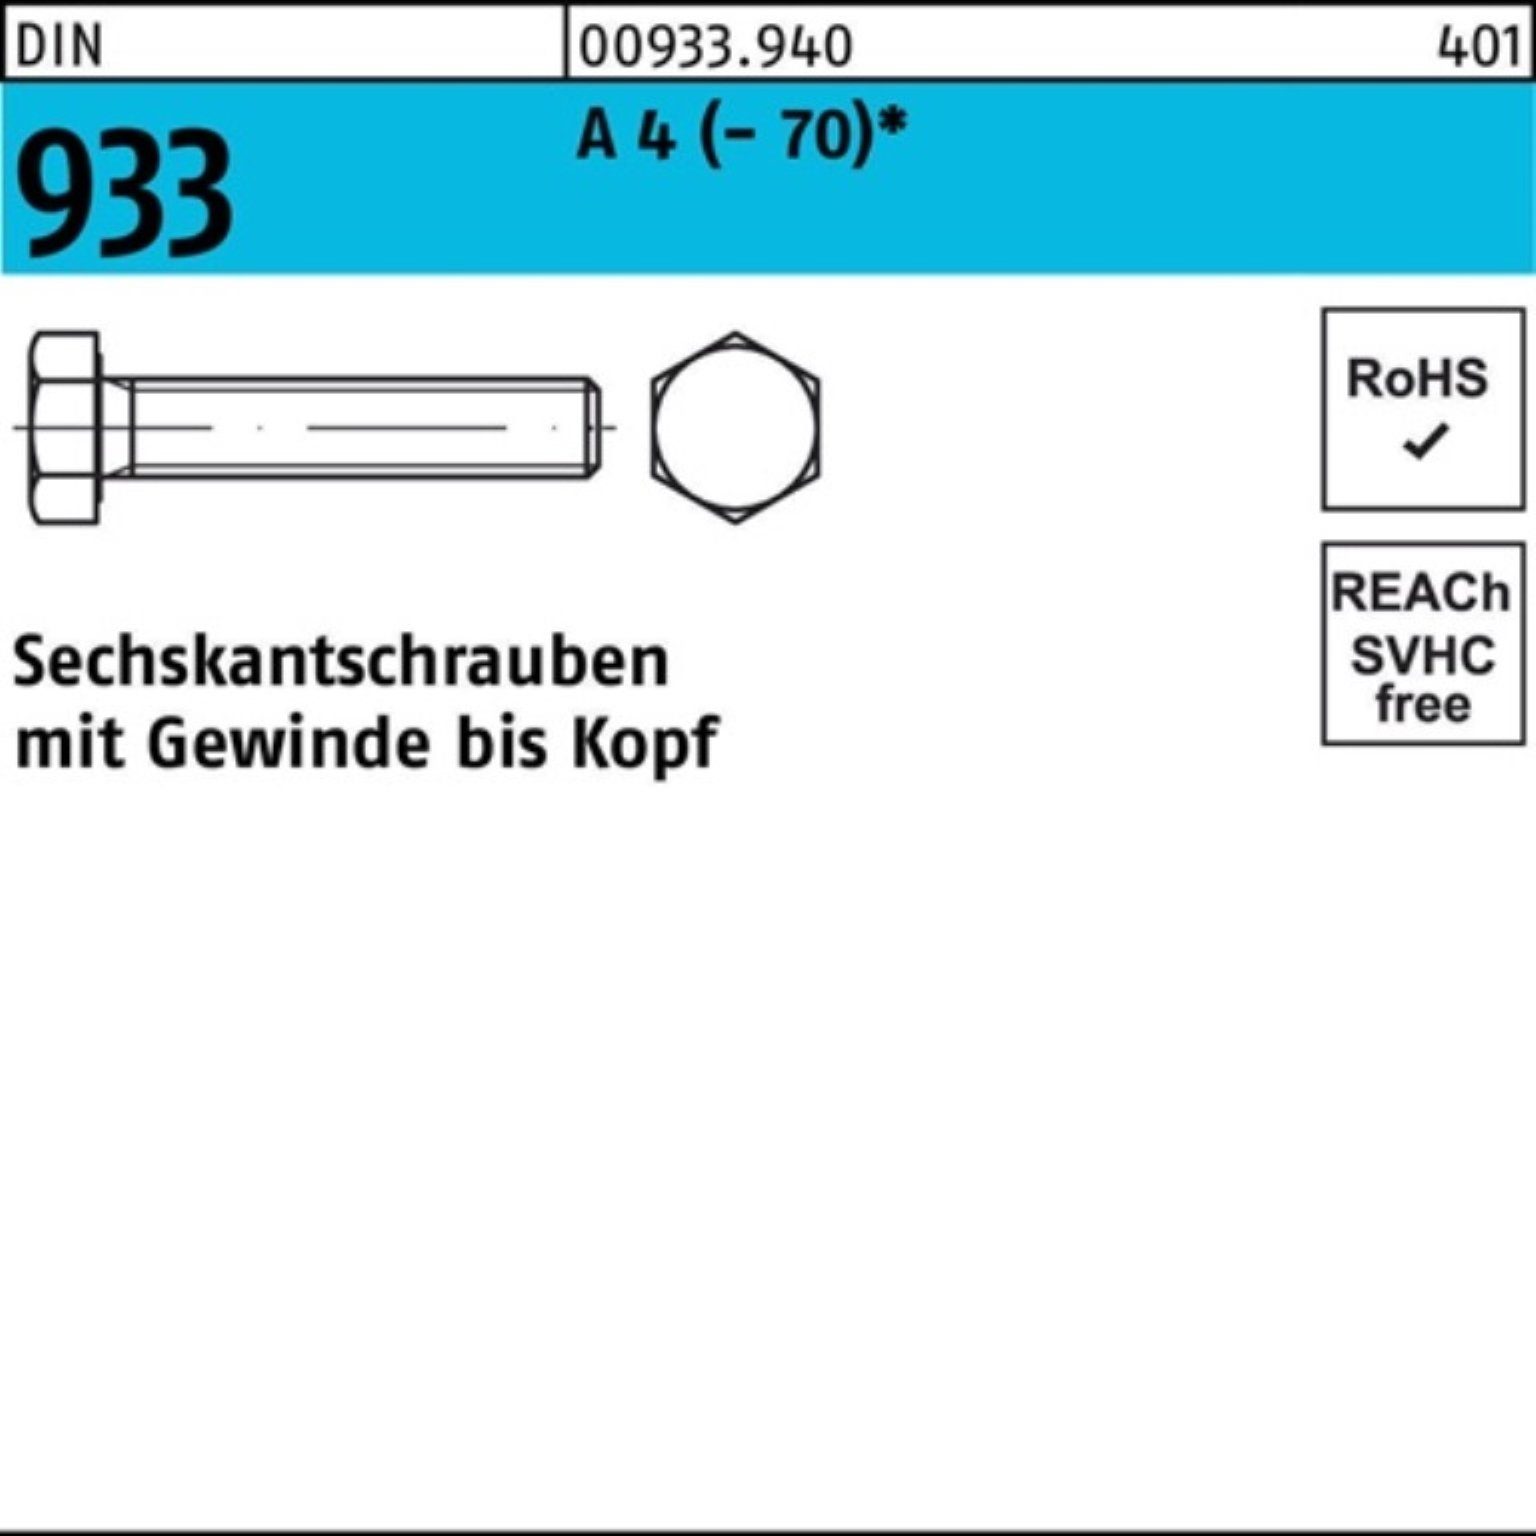 A 4 DIN 1 Reyher Sechskantschraube DI VG M27x 100er 933 Stück 60 Sechskantschraube (70) Pack